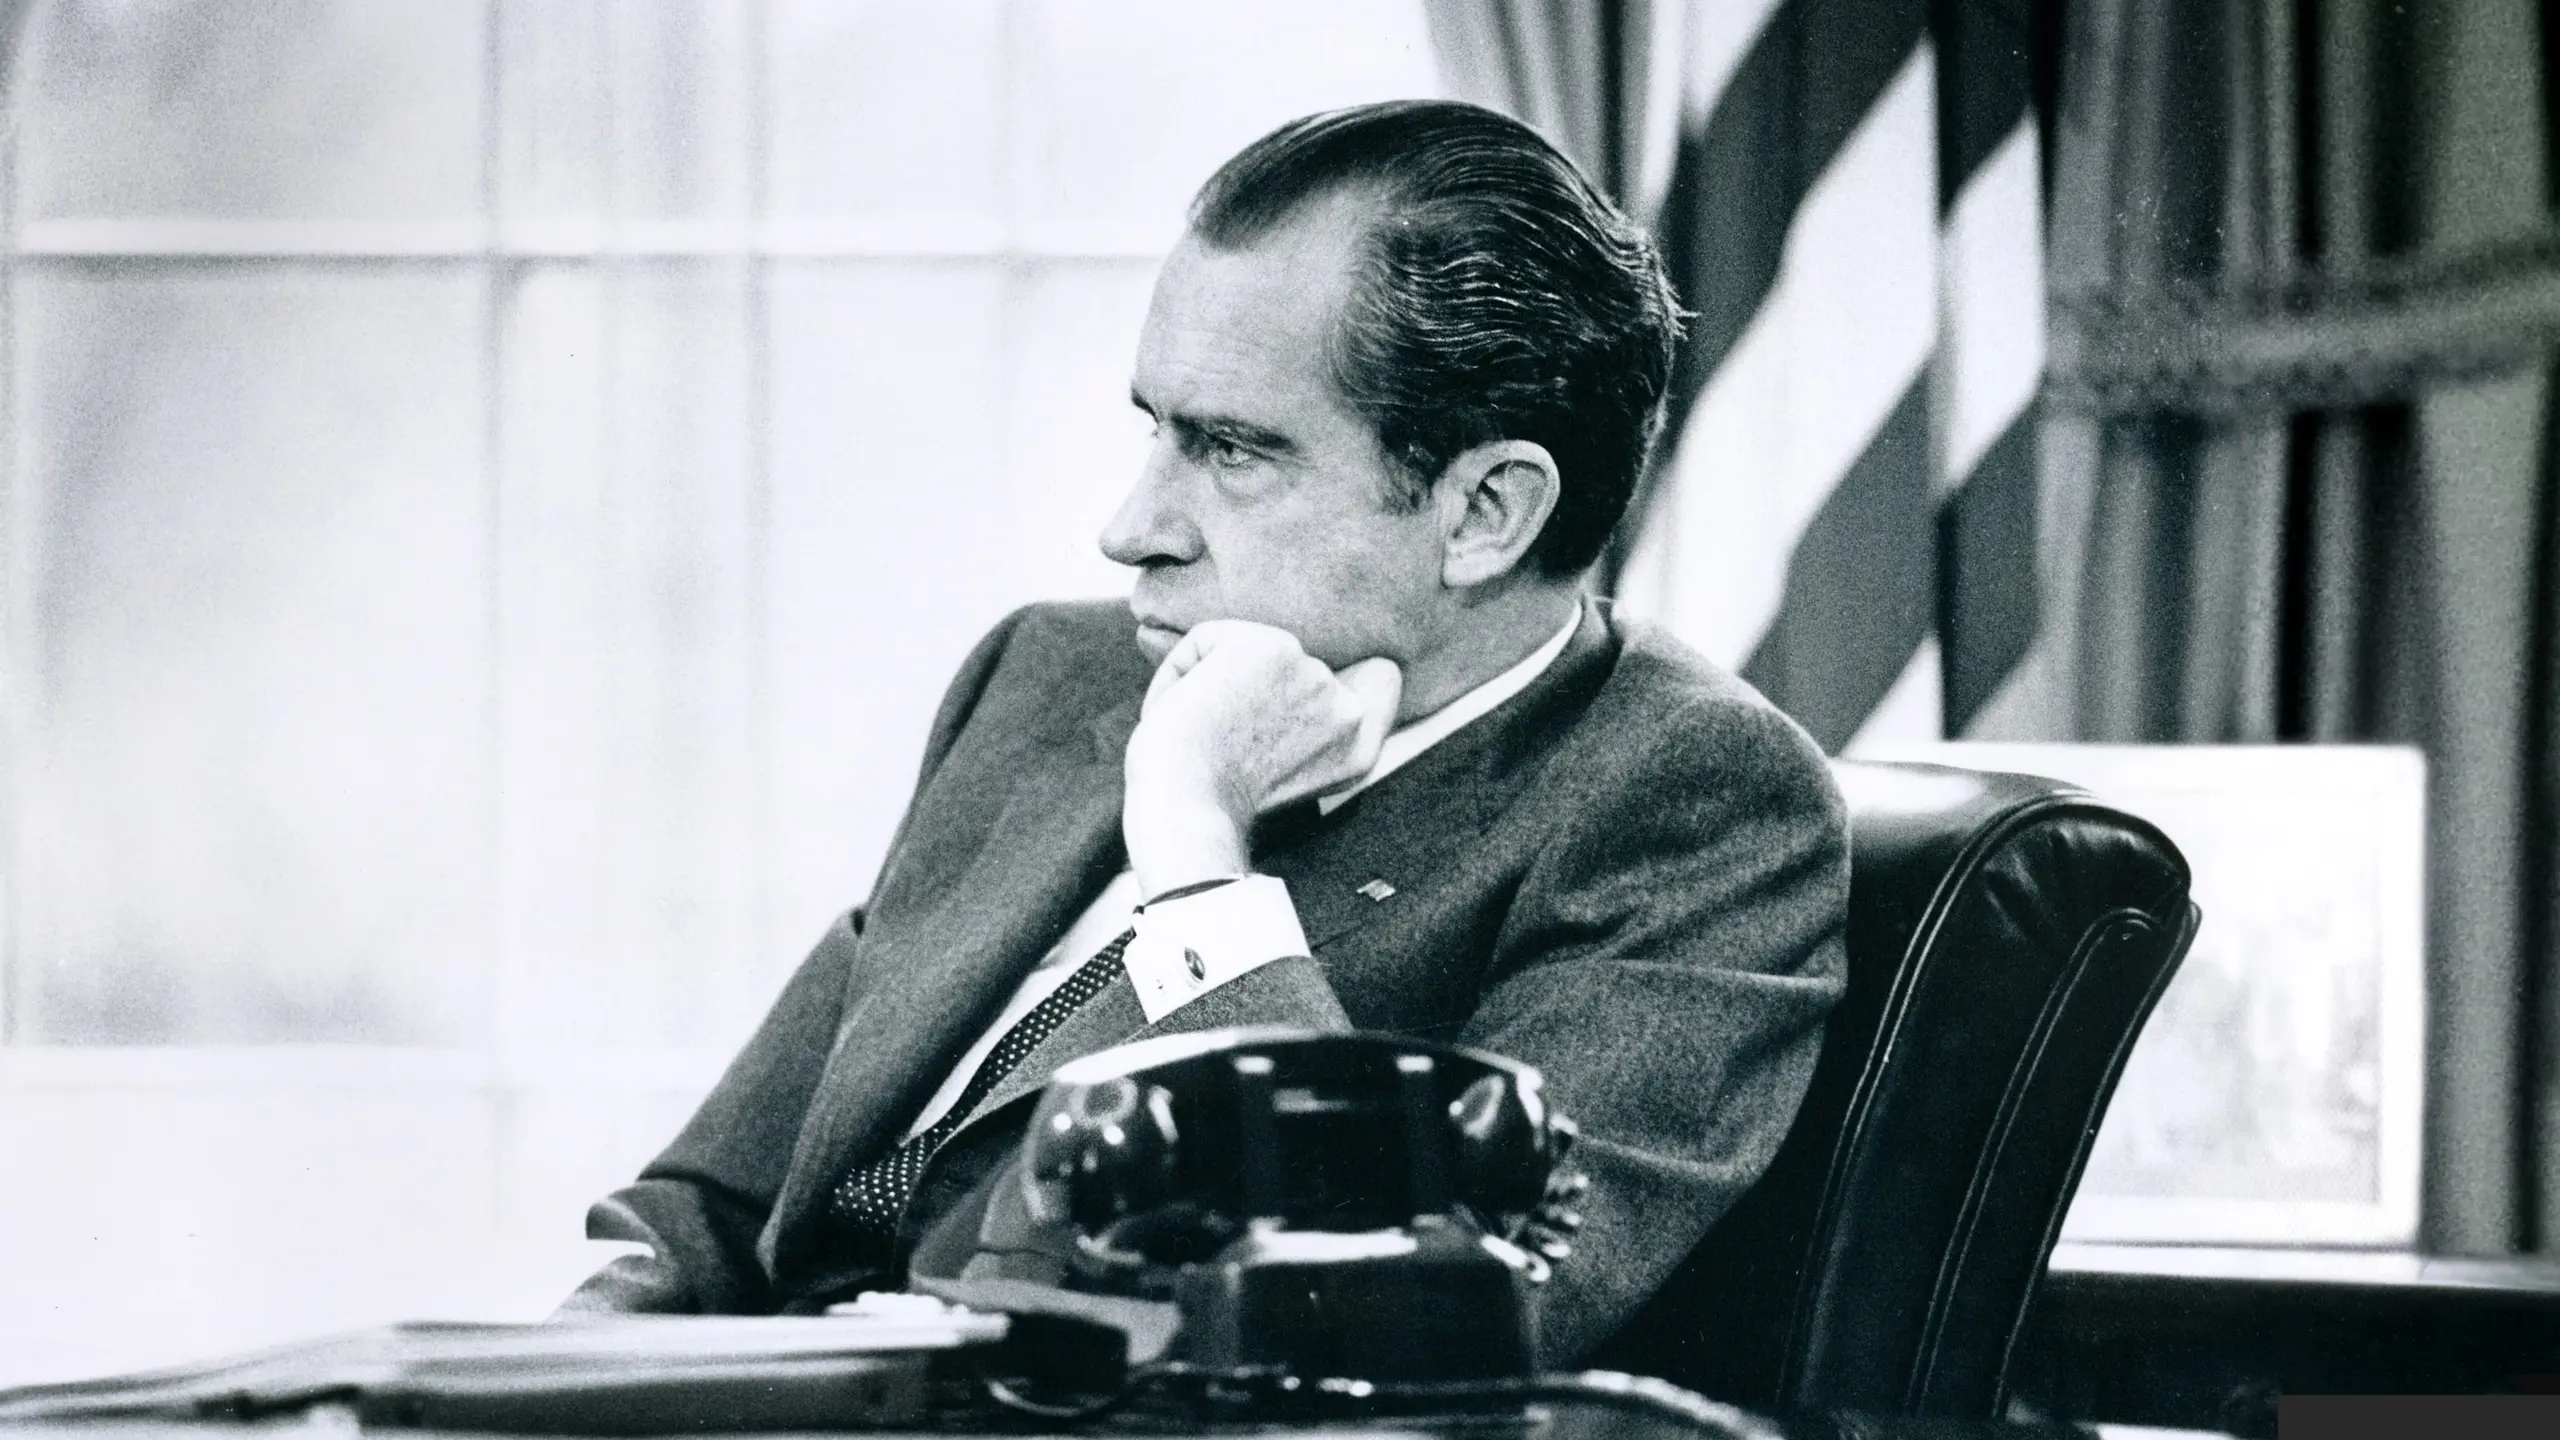 Nixon by Nixon: In seinen eigenen Worten